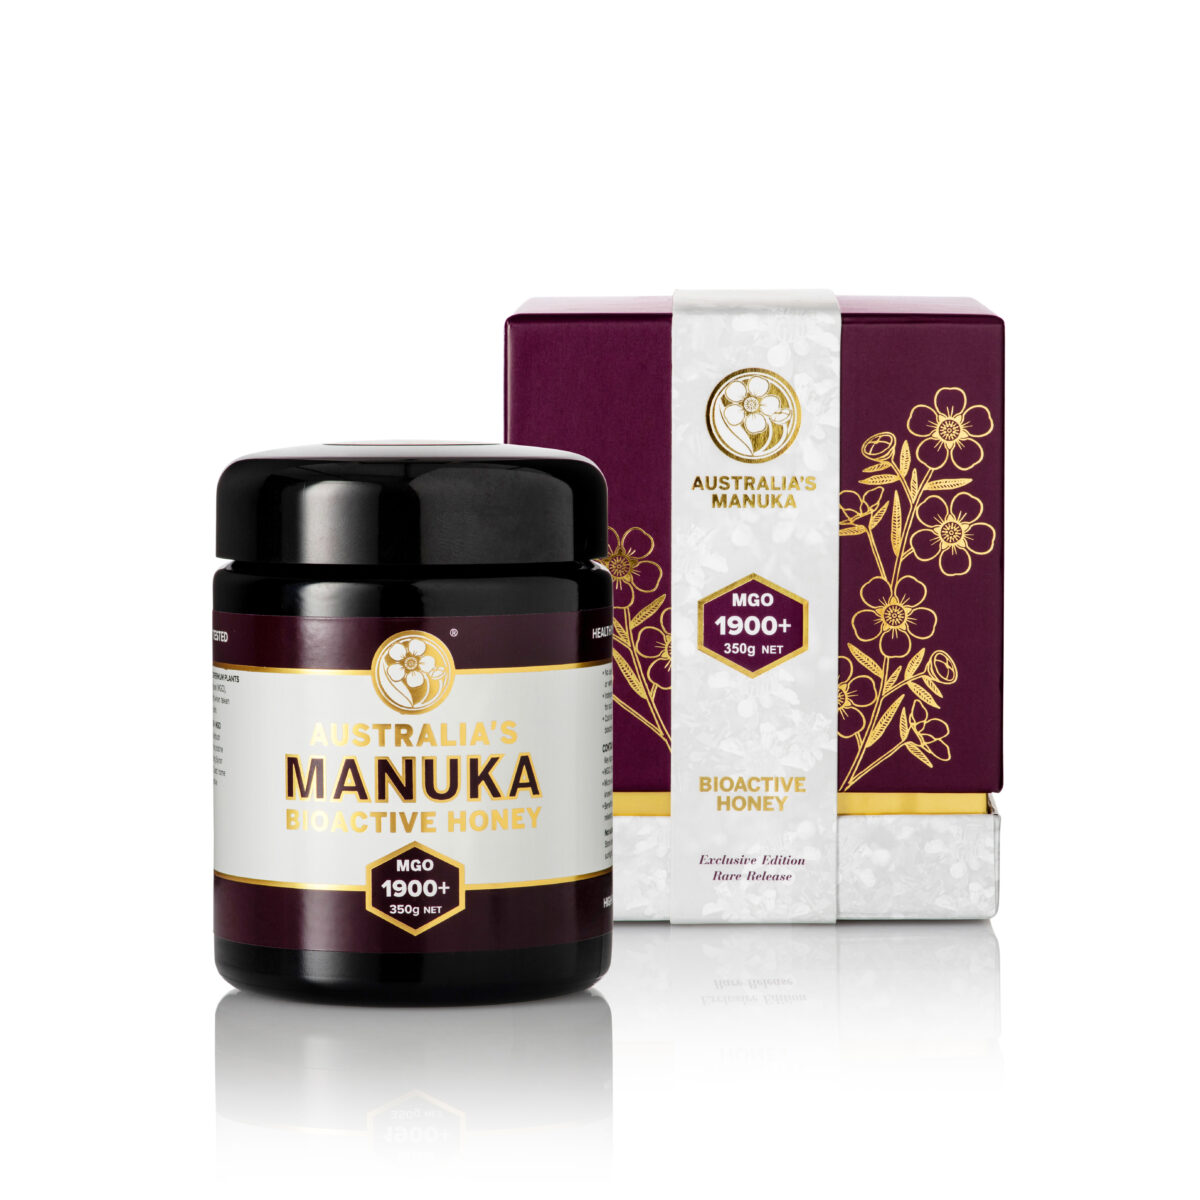 Australias Manuka 1900 MGO Manuka Honey Limited Edition